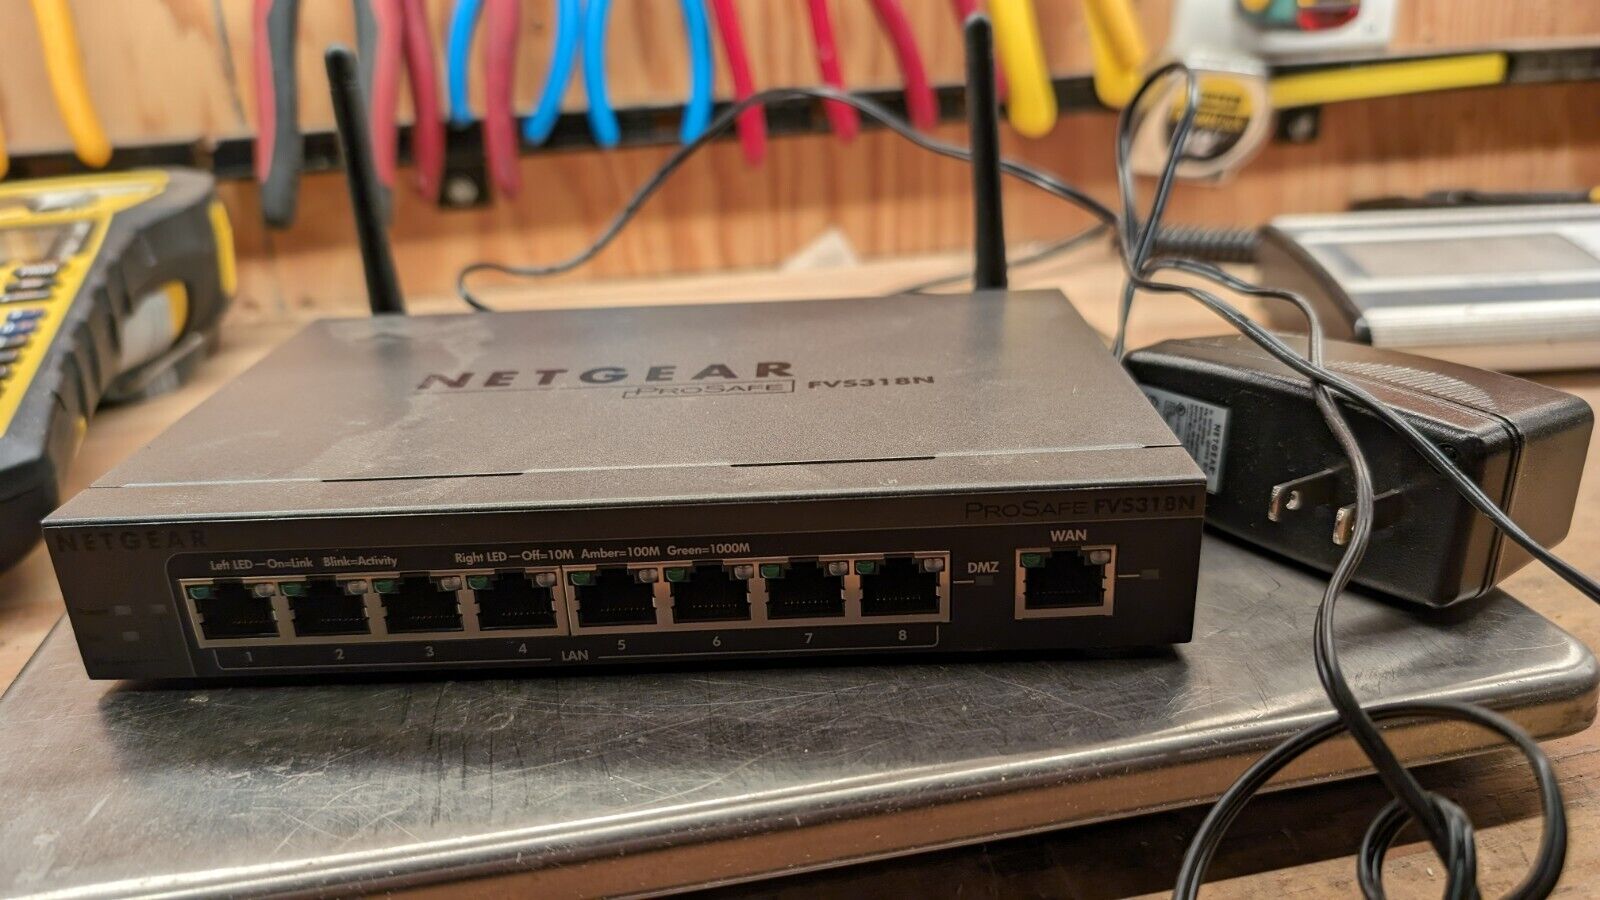 NETGEAR ProSAFE FVS318N 8-Port Wireless-N VPN Firewall